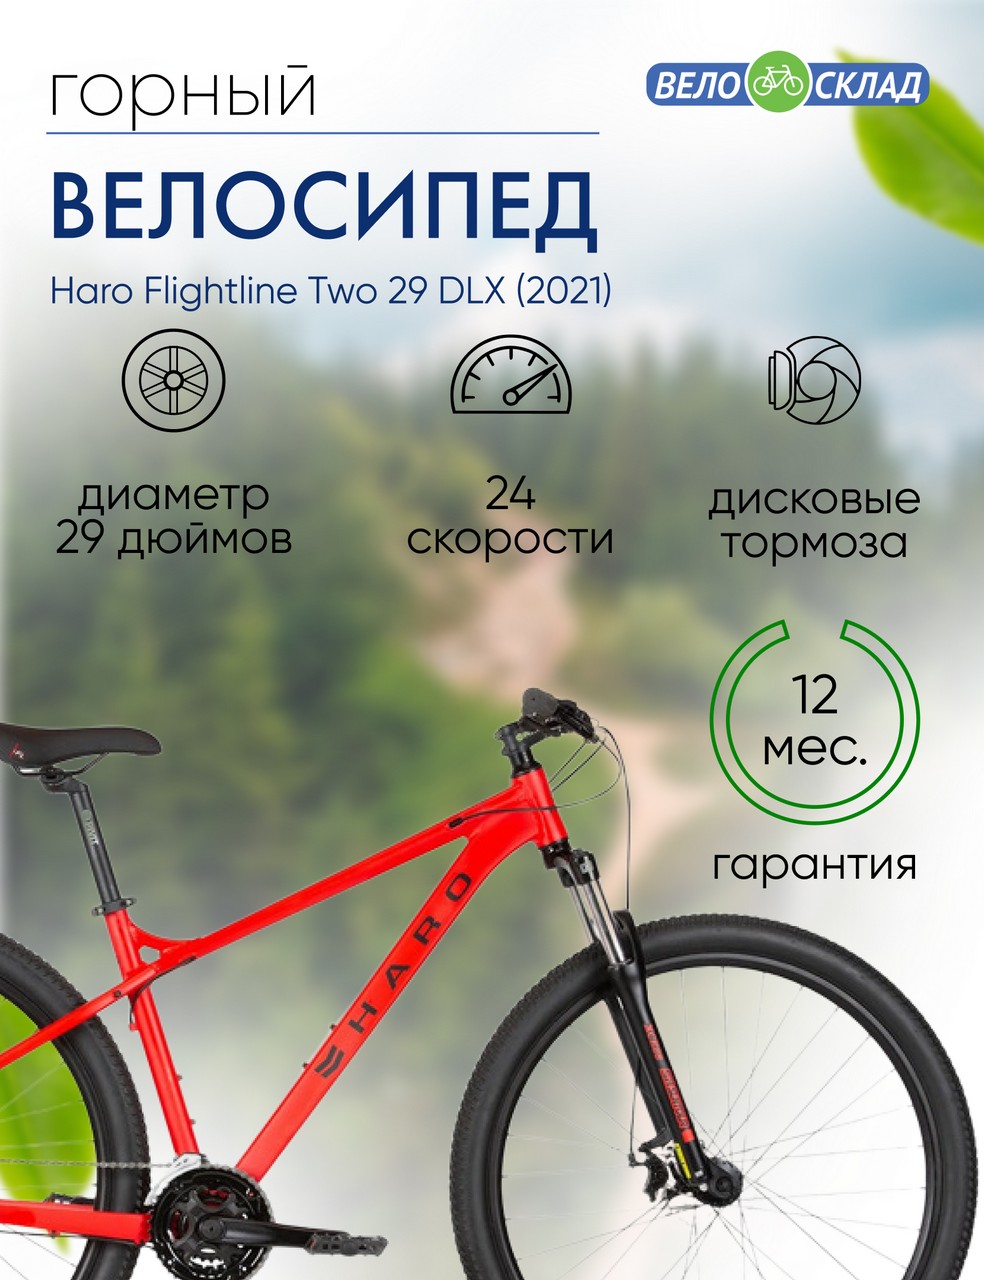 Горный велосипед Haro Flightline Two 29 DLX, год 2021, цвет Красный, ростовка 22